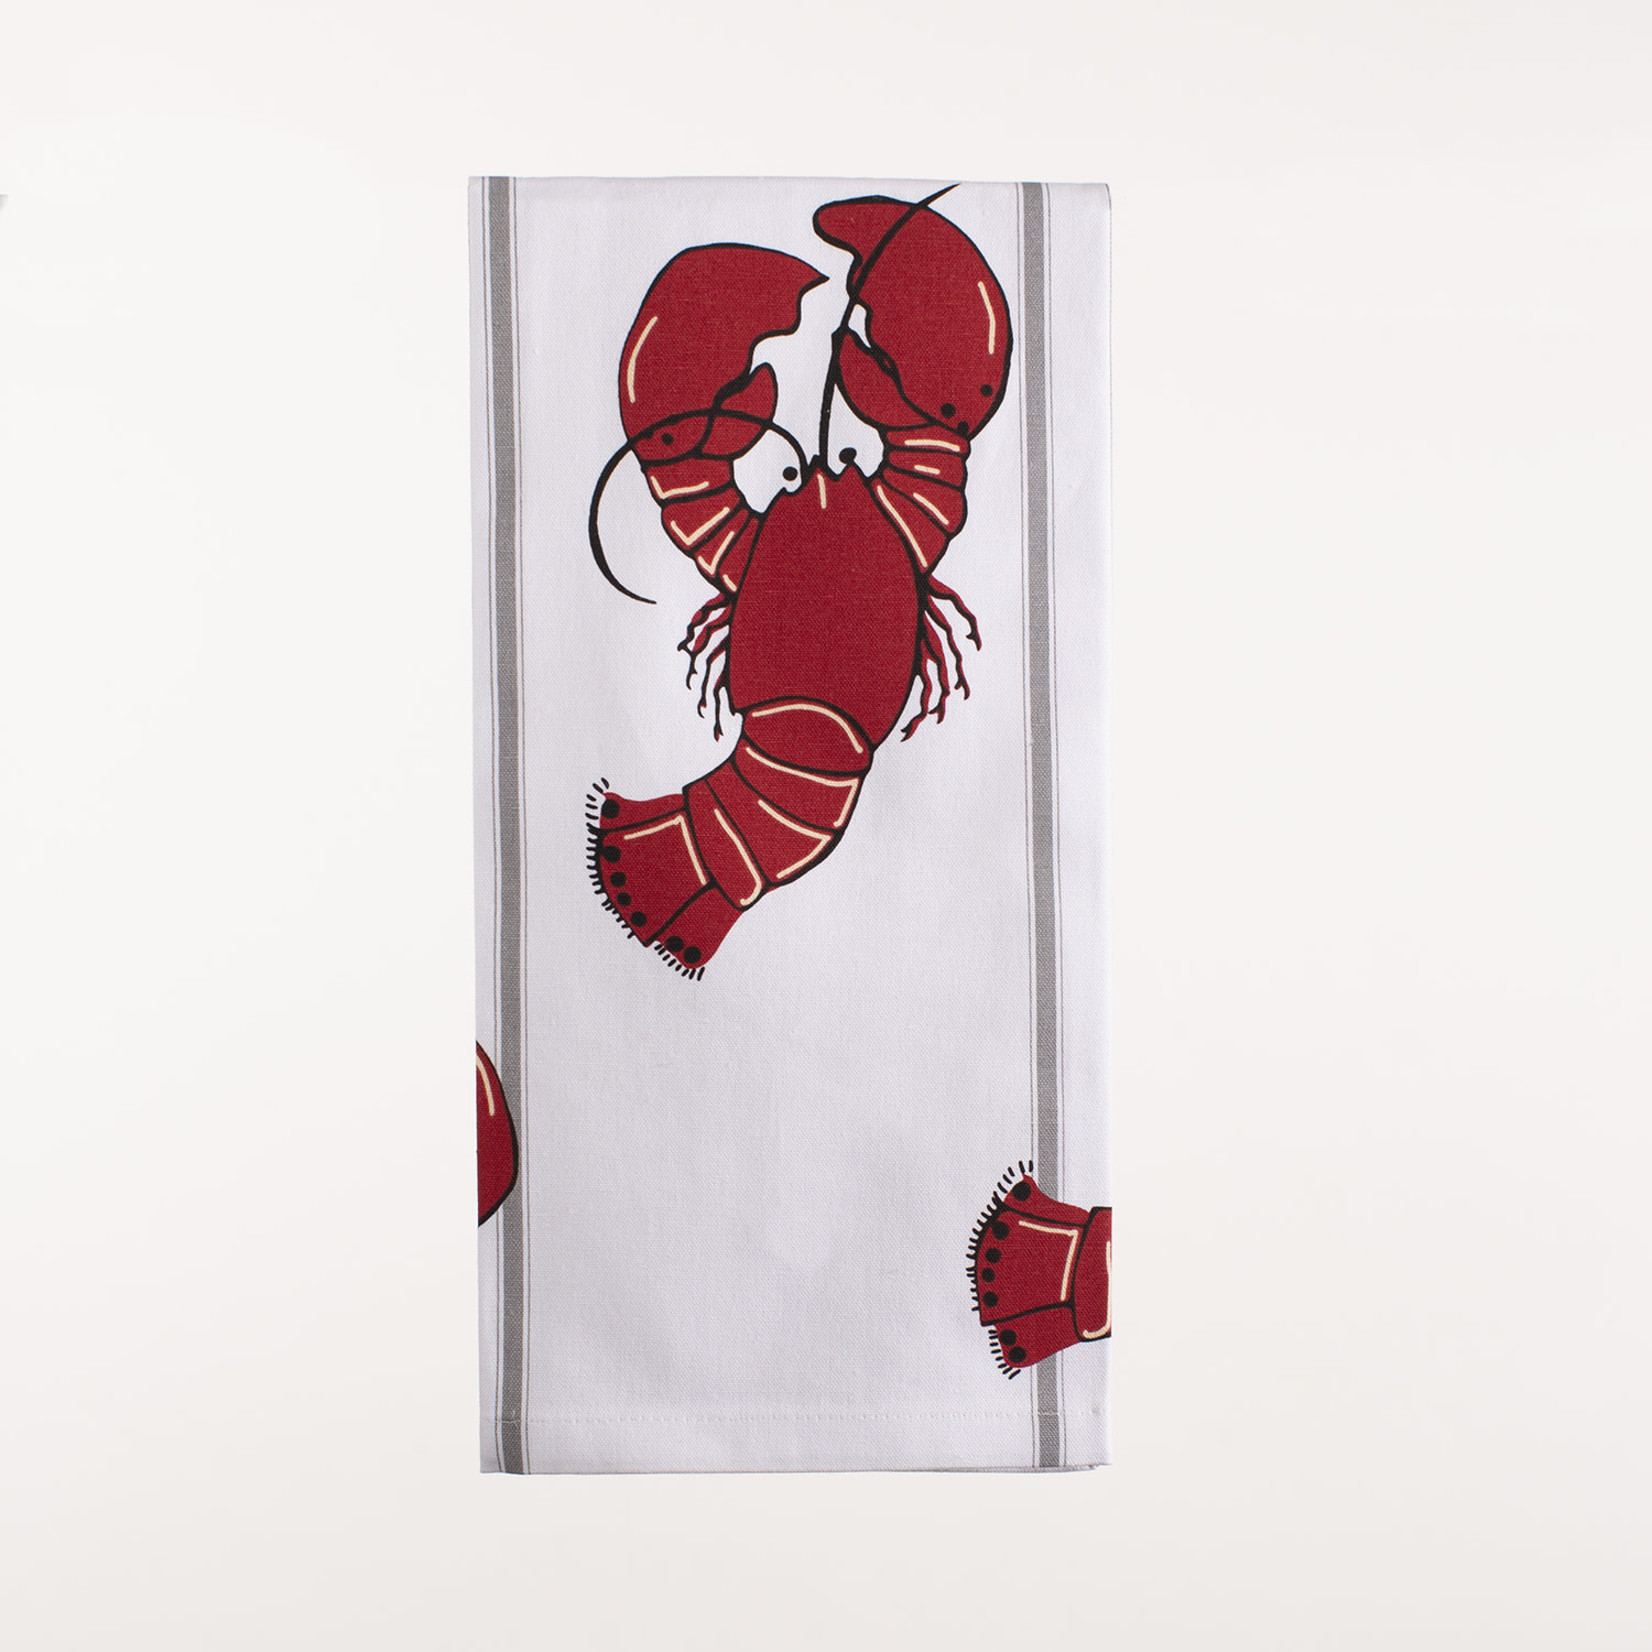 28" x 20" Kitchen Towel - Lobster